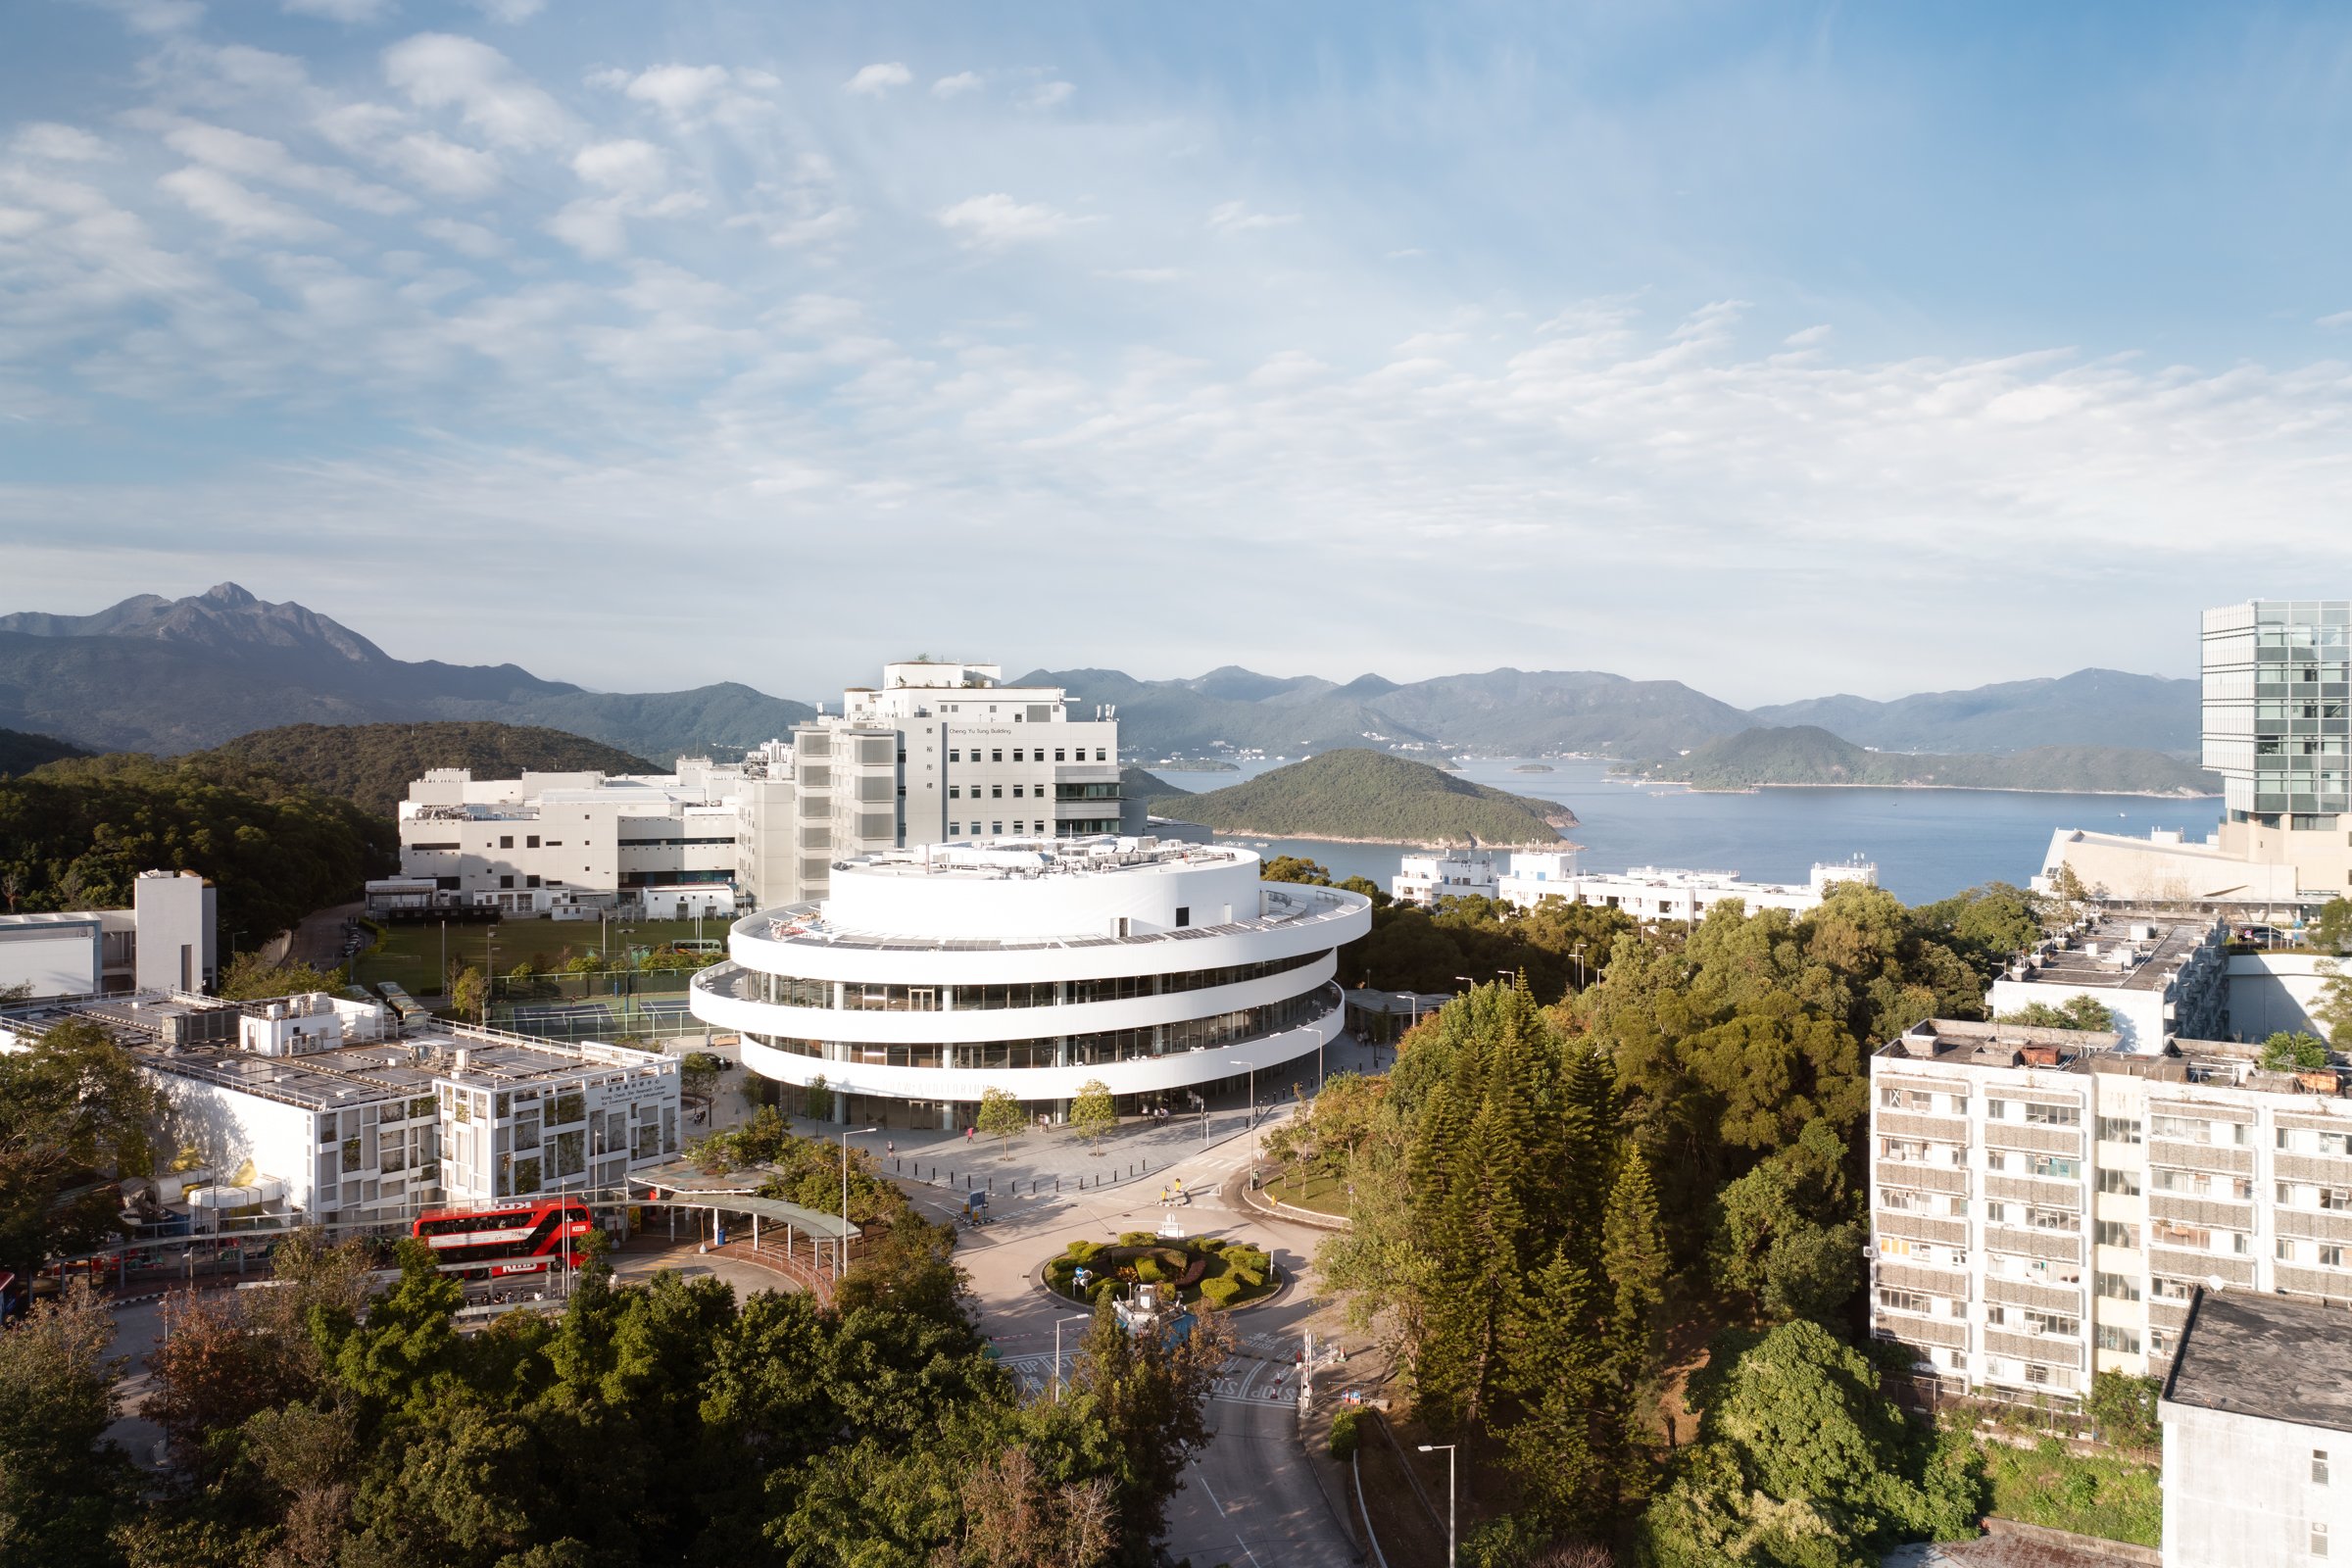  HKUST Shaw Auditorium Designed by Henning Larsen Architects Hong Kong 